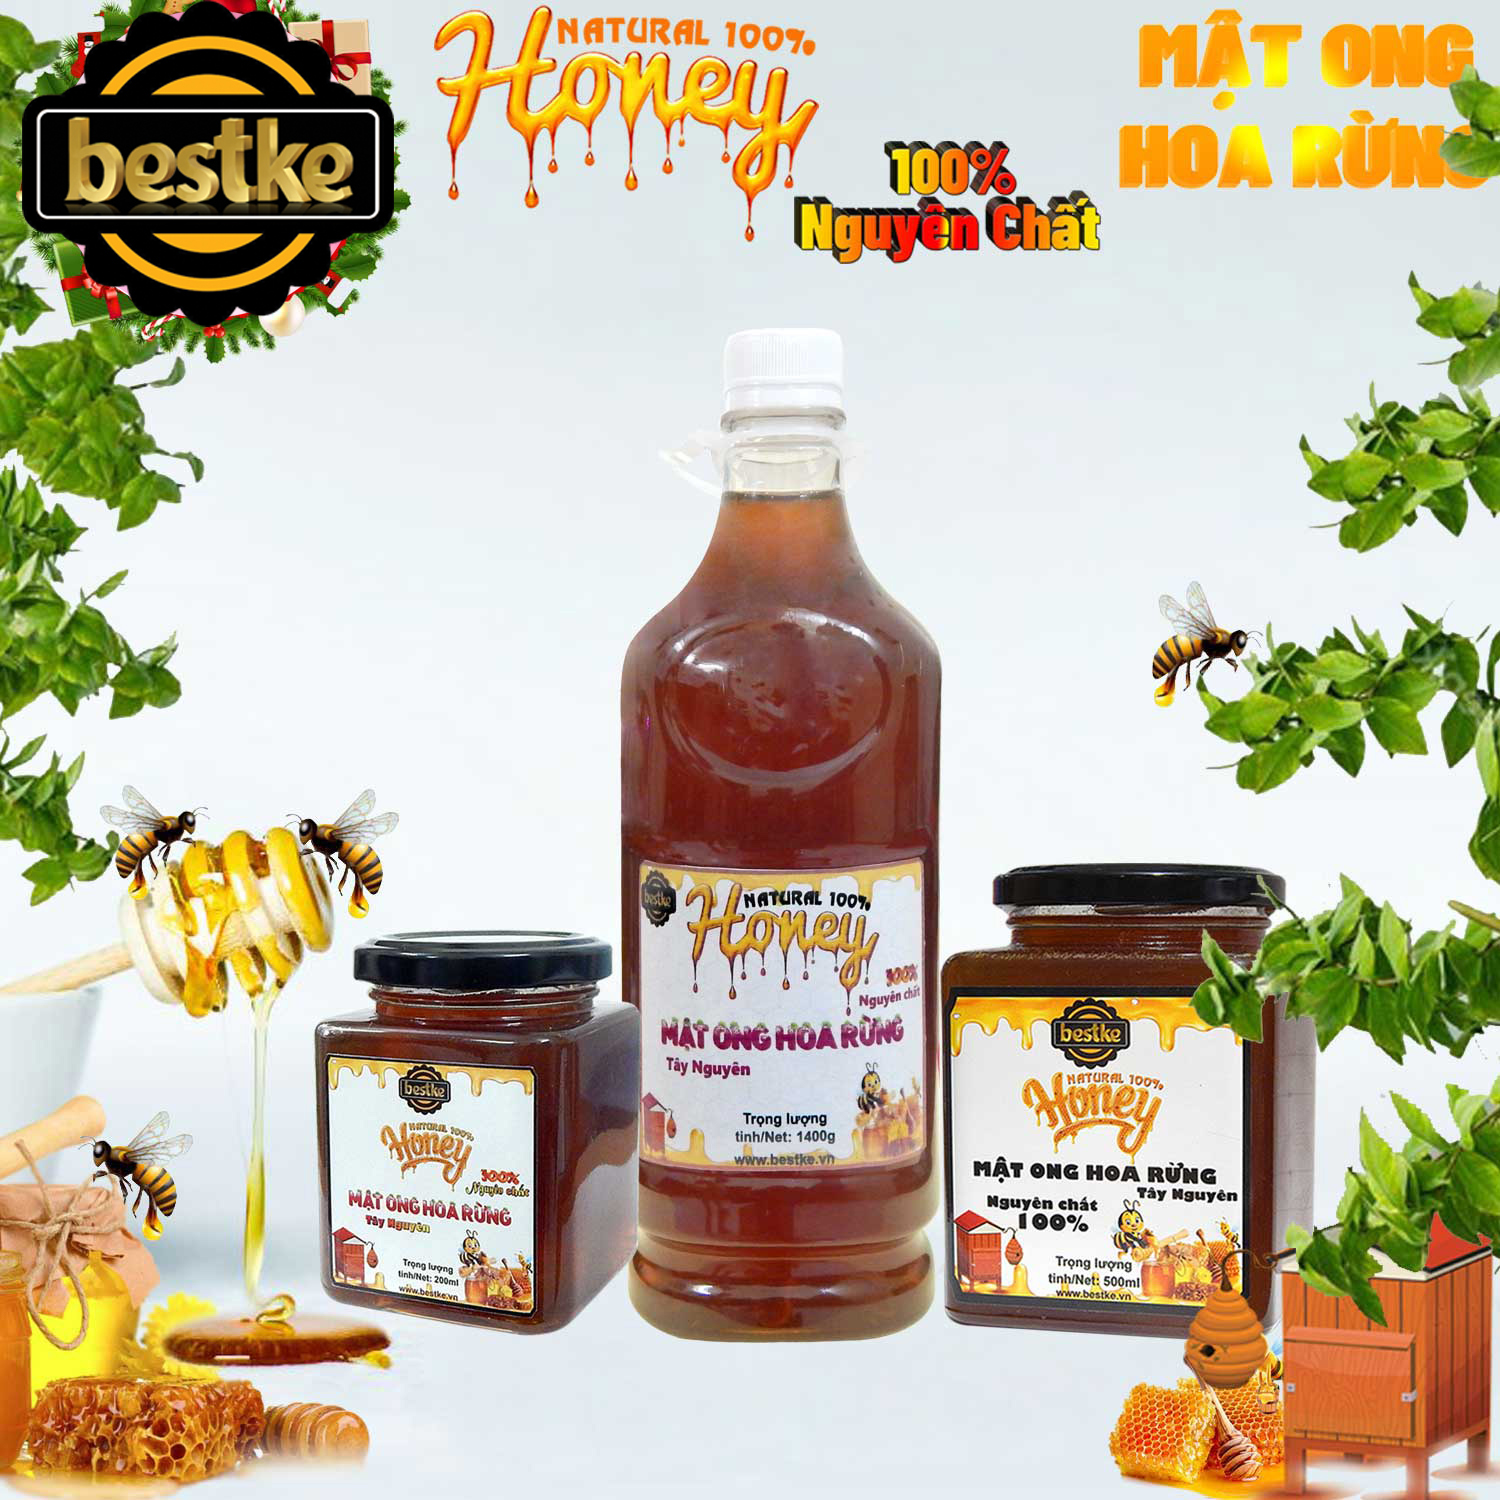 bestke mật ong hoa rừng nguyên chất 100%, combo 5 hũ, mỗi hũ 200ml, honey natural bestke